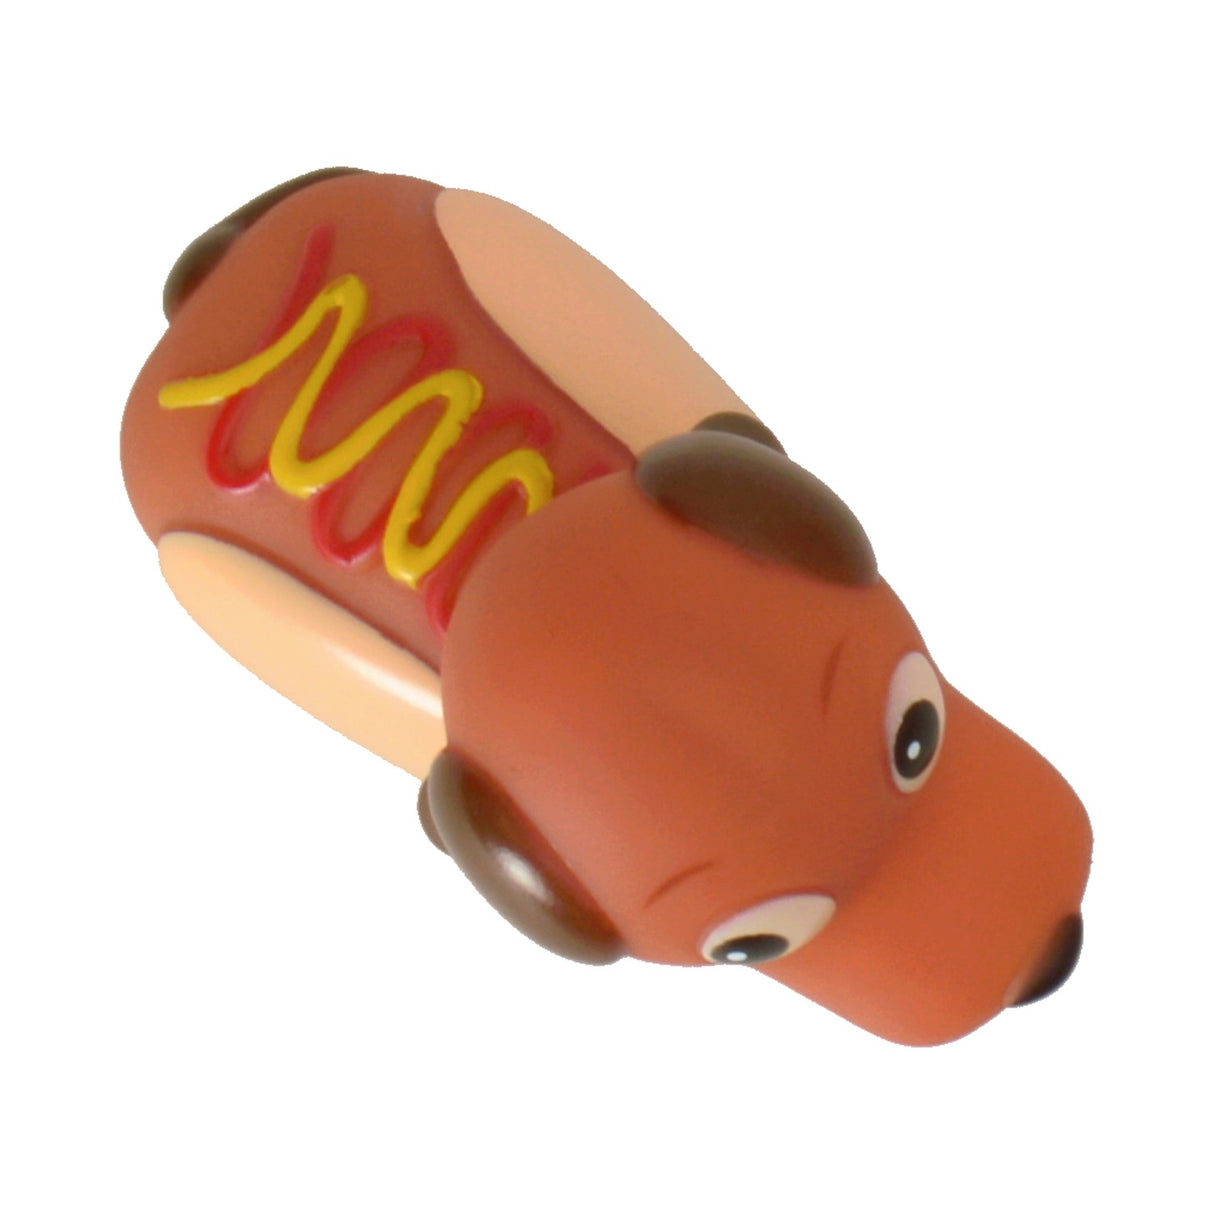 Hot Dog Wackelfigur - Kaufe jetzt den süßen Dackel für dein Auto